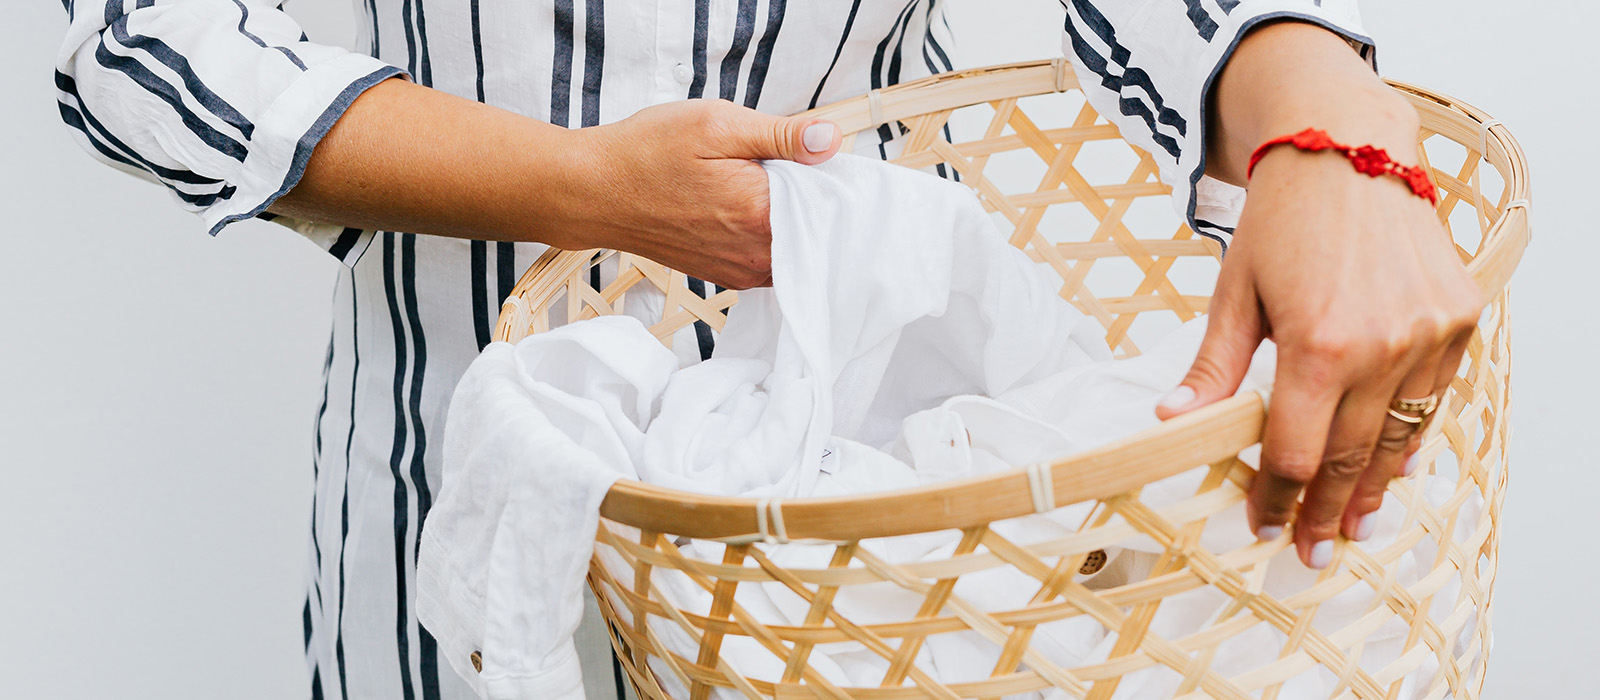 En närbild på en tvättkorg i ljus rotting. En kvinna i en randig skjorta lyfter upp en vit skjorta i korgen.